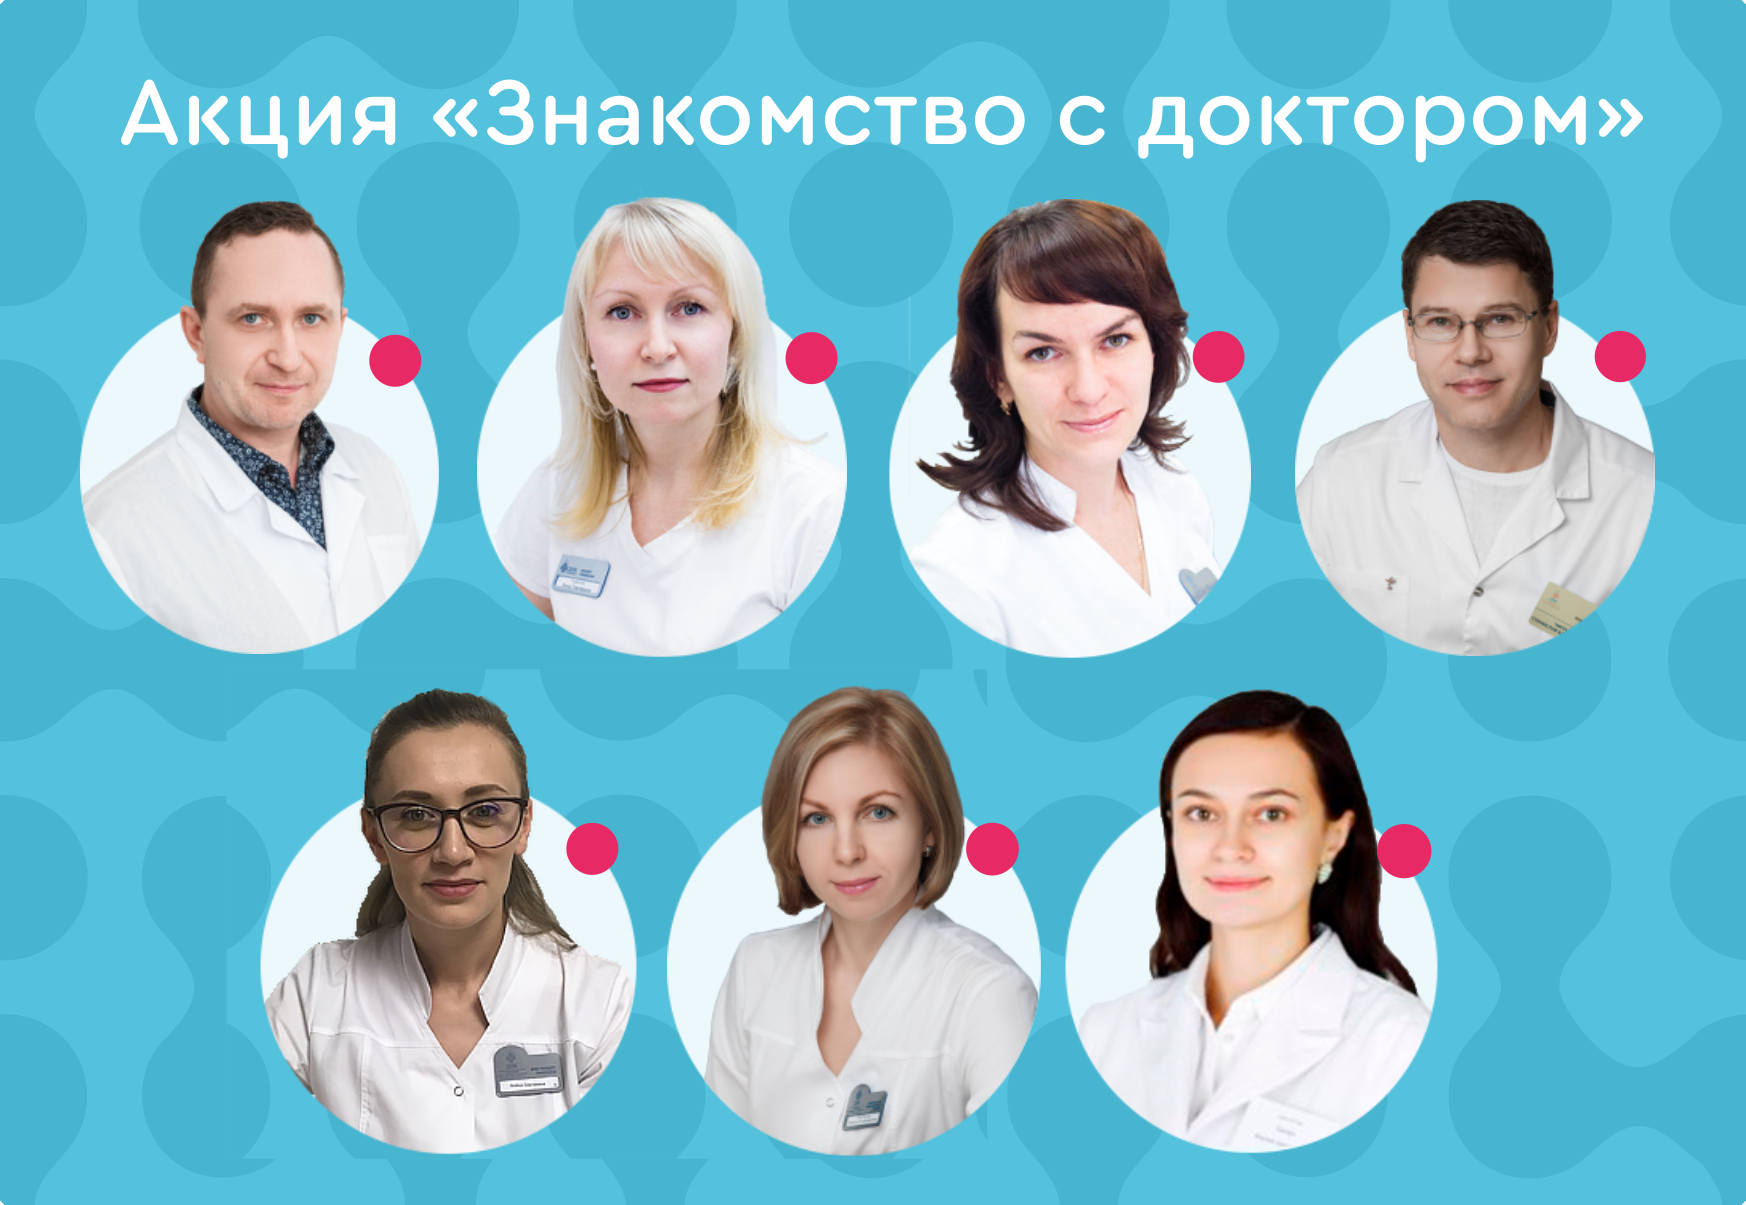 Сайт днк челябинск. Бесплатная консультация врача. ДНК Челябинск медицинский центр. ДНК клиника врачи.